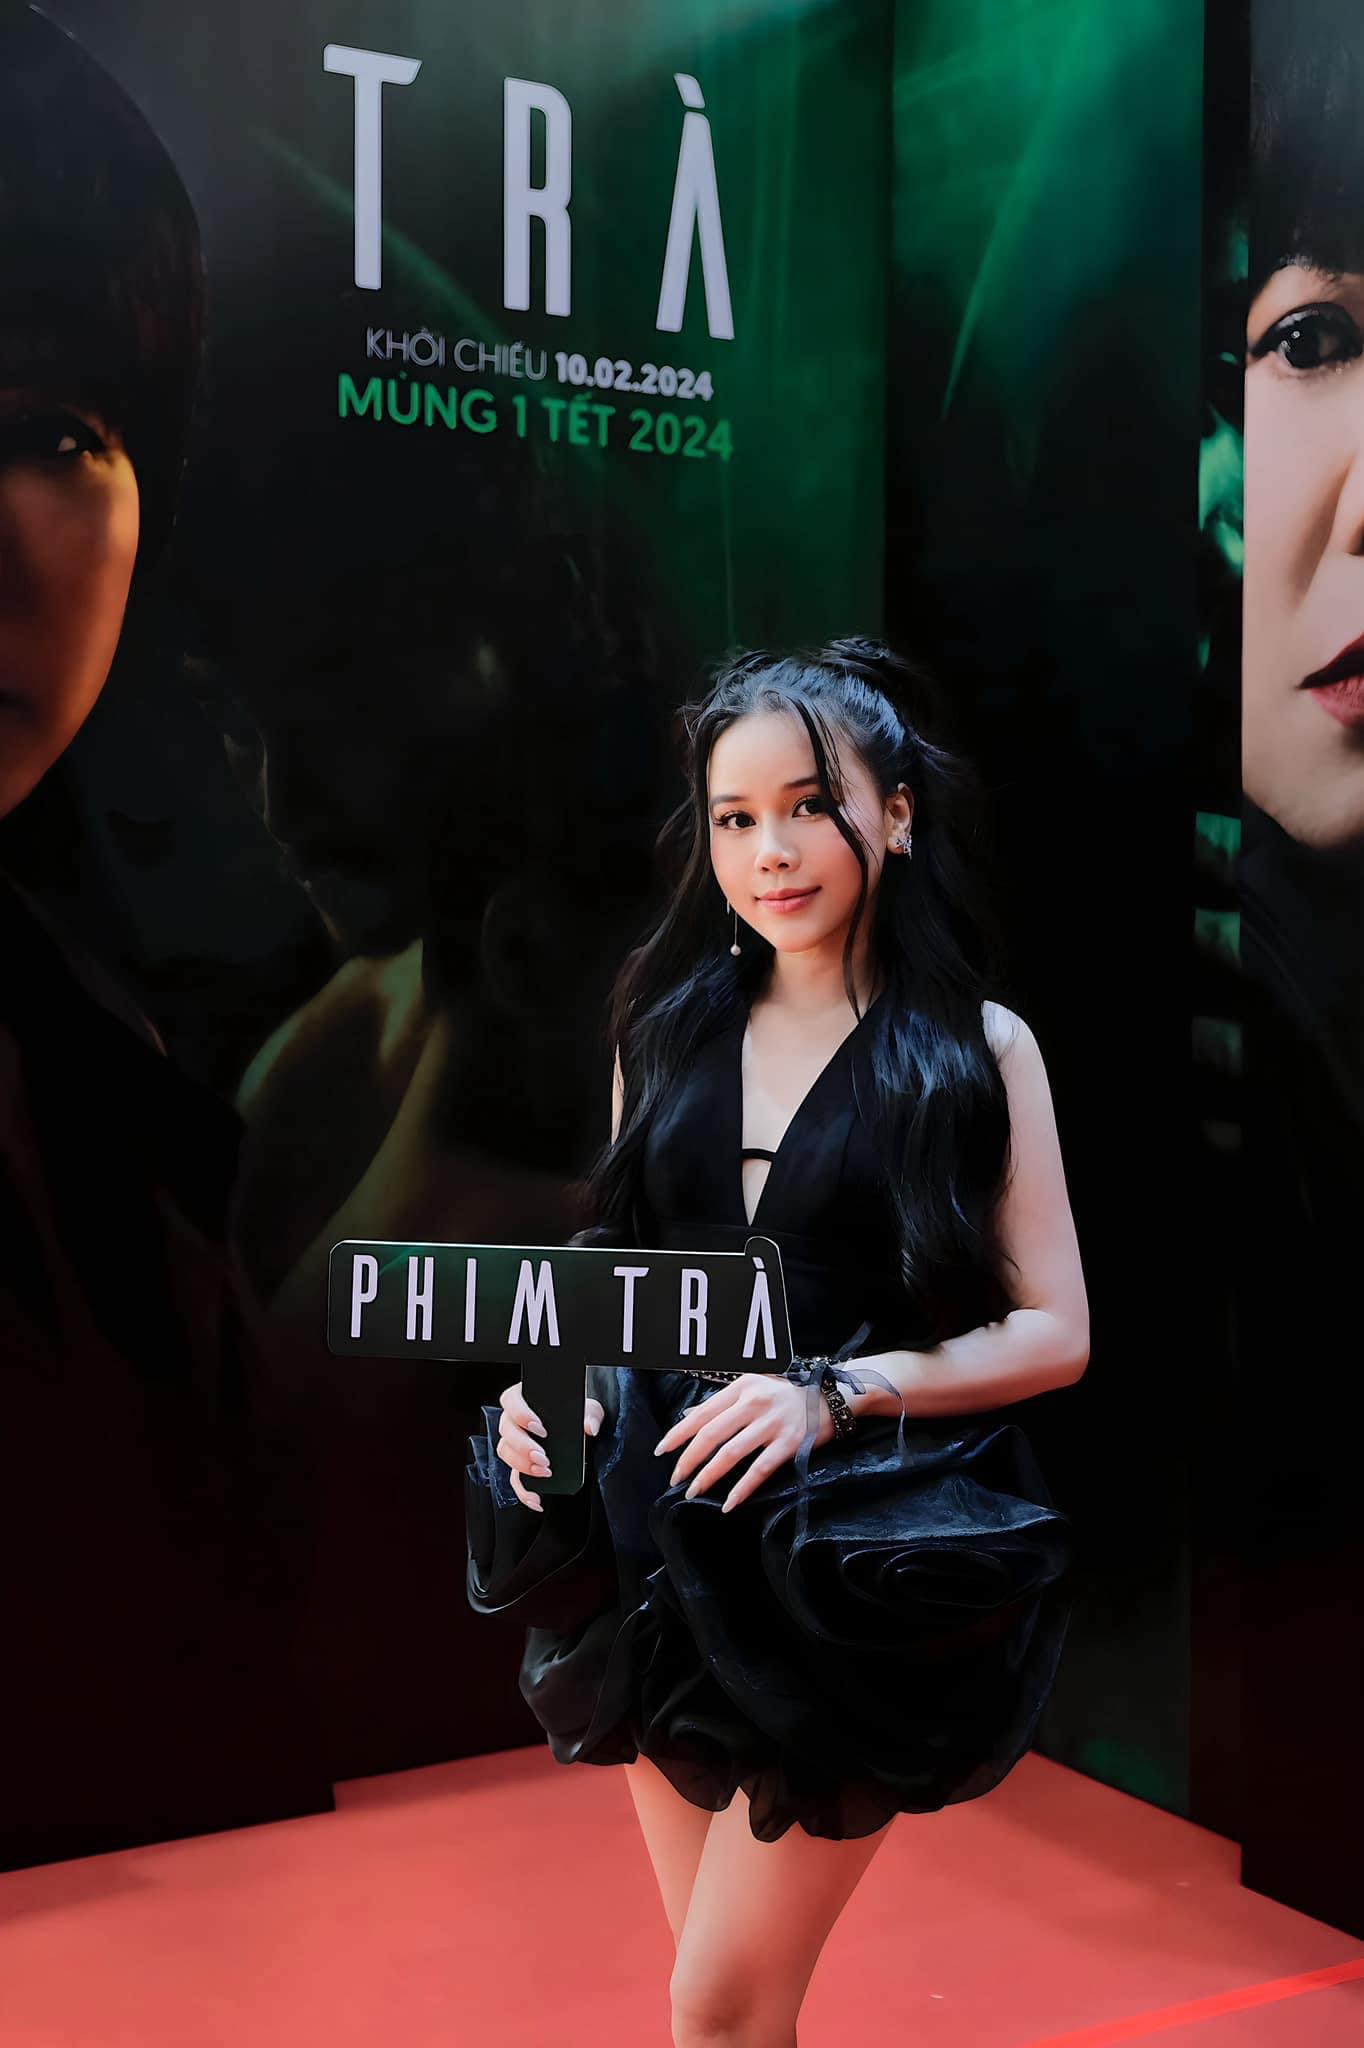 Nhan sắc nữ diễn viên vào vai 'tiểu tam' trong phim tết của Lê Hoàng- Ảnh 1.